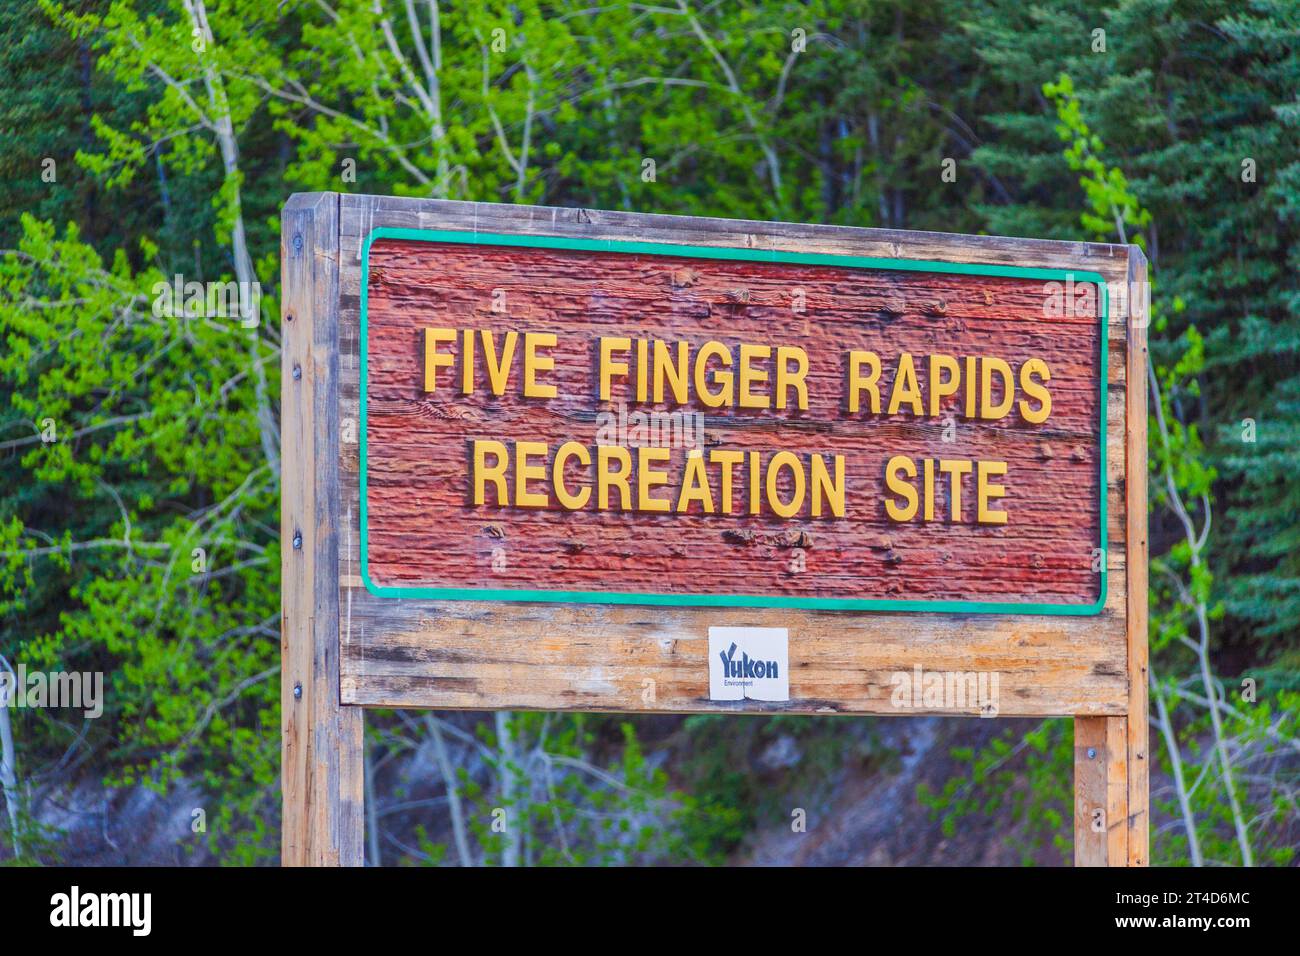 Rapide Five Finger sul fiume Yukon, un famoso ostacolo per i piroscafi in pedalò durante la corsa all'oro di Klondike. Foto Stock